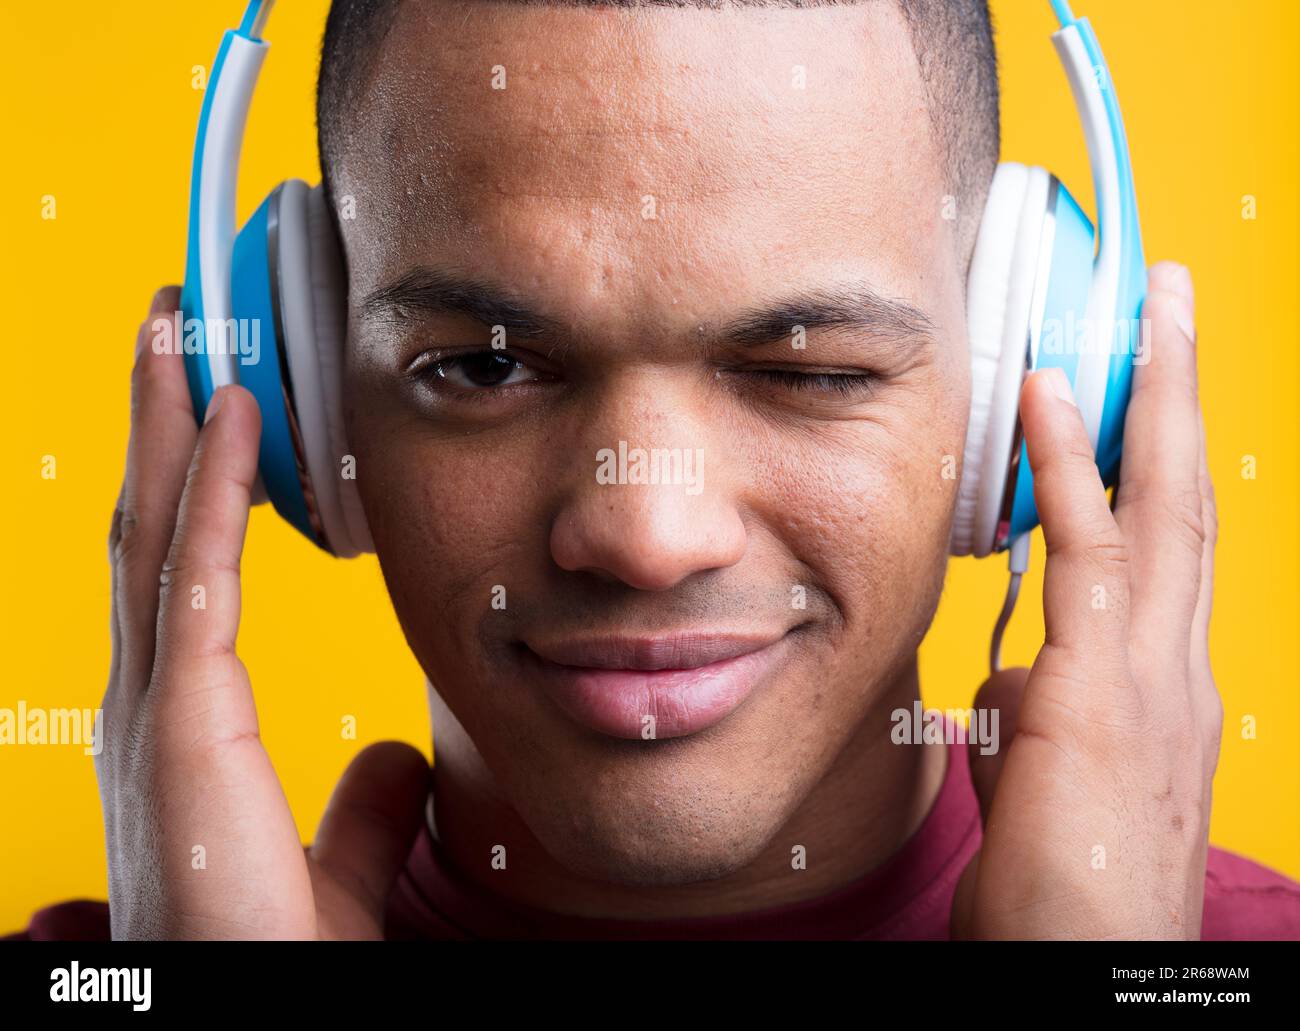 Il giovane si strinca mentre ascolta appassionatamente musica o podcast, con cuffie blu, su sfondo giallo. Capelli corti rasati, pelle marrone scuro, b Foto Stock